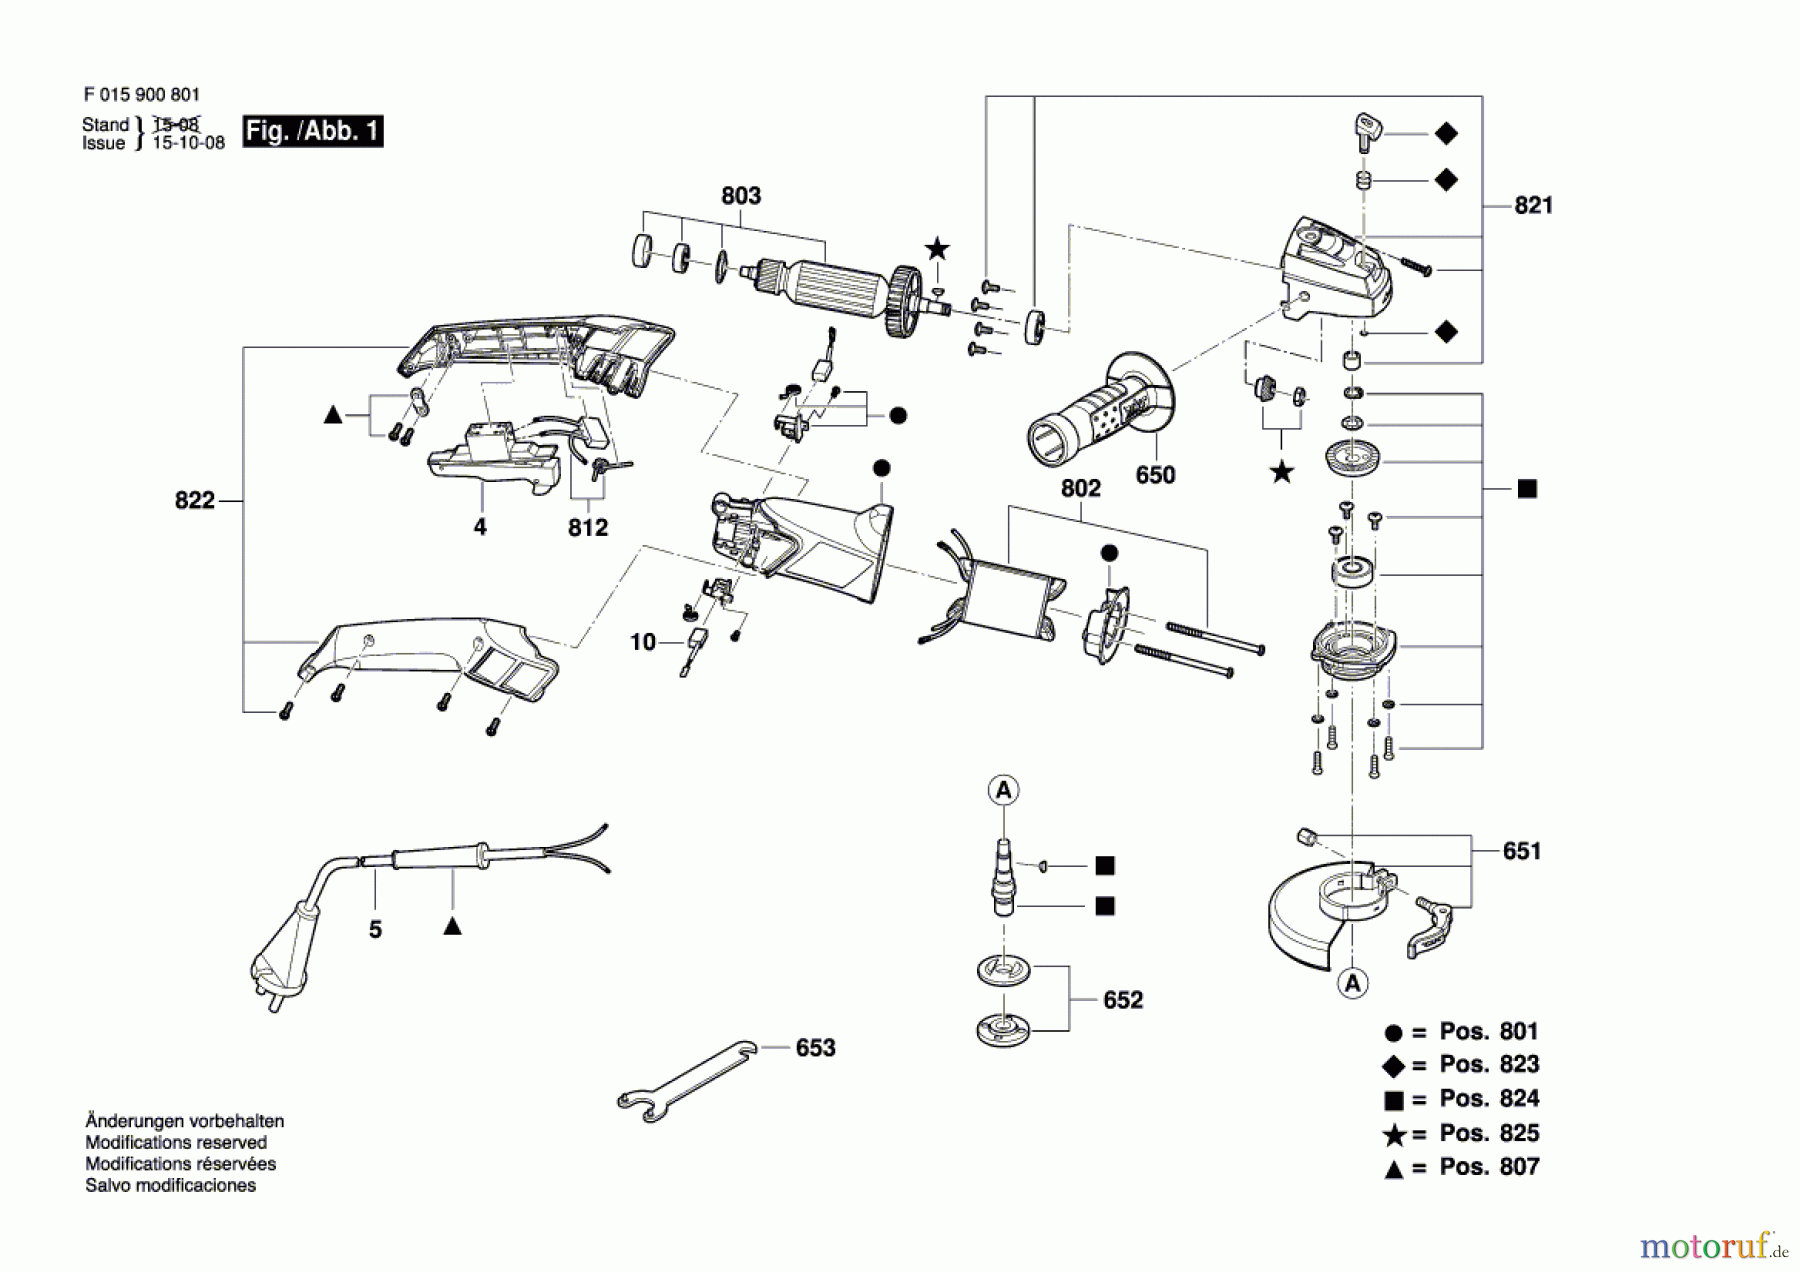  Bosch Werkzeug Pw-Winkelschleifer 9010 Seite 1